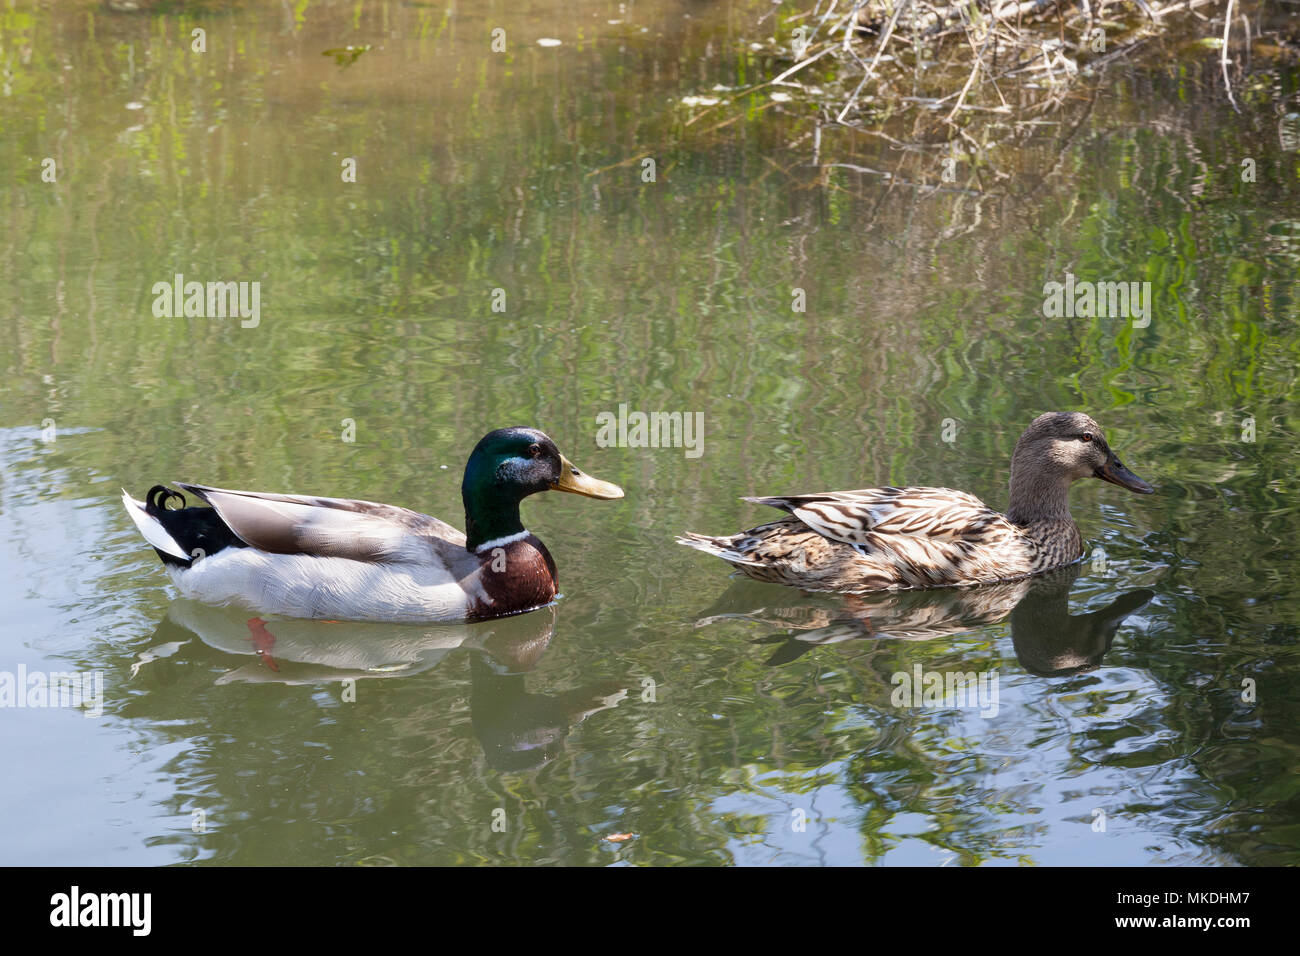 Zucht paar Stockenten, Anas platyrhynchos, Schwimmen mit Reflexion in einem Salzwasser Kanal im Frühjahr. Closeup Profil anzeigen Stockfoto